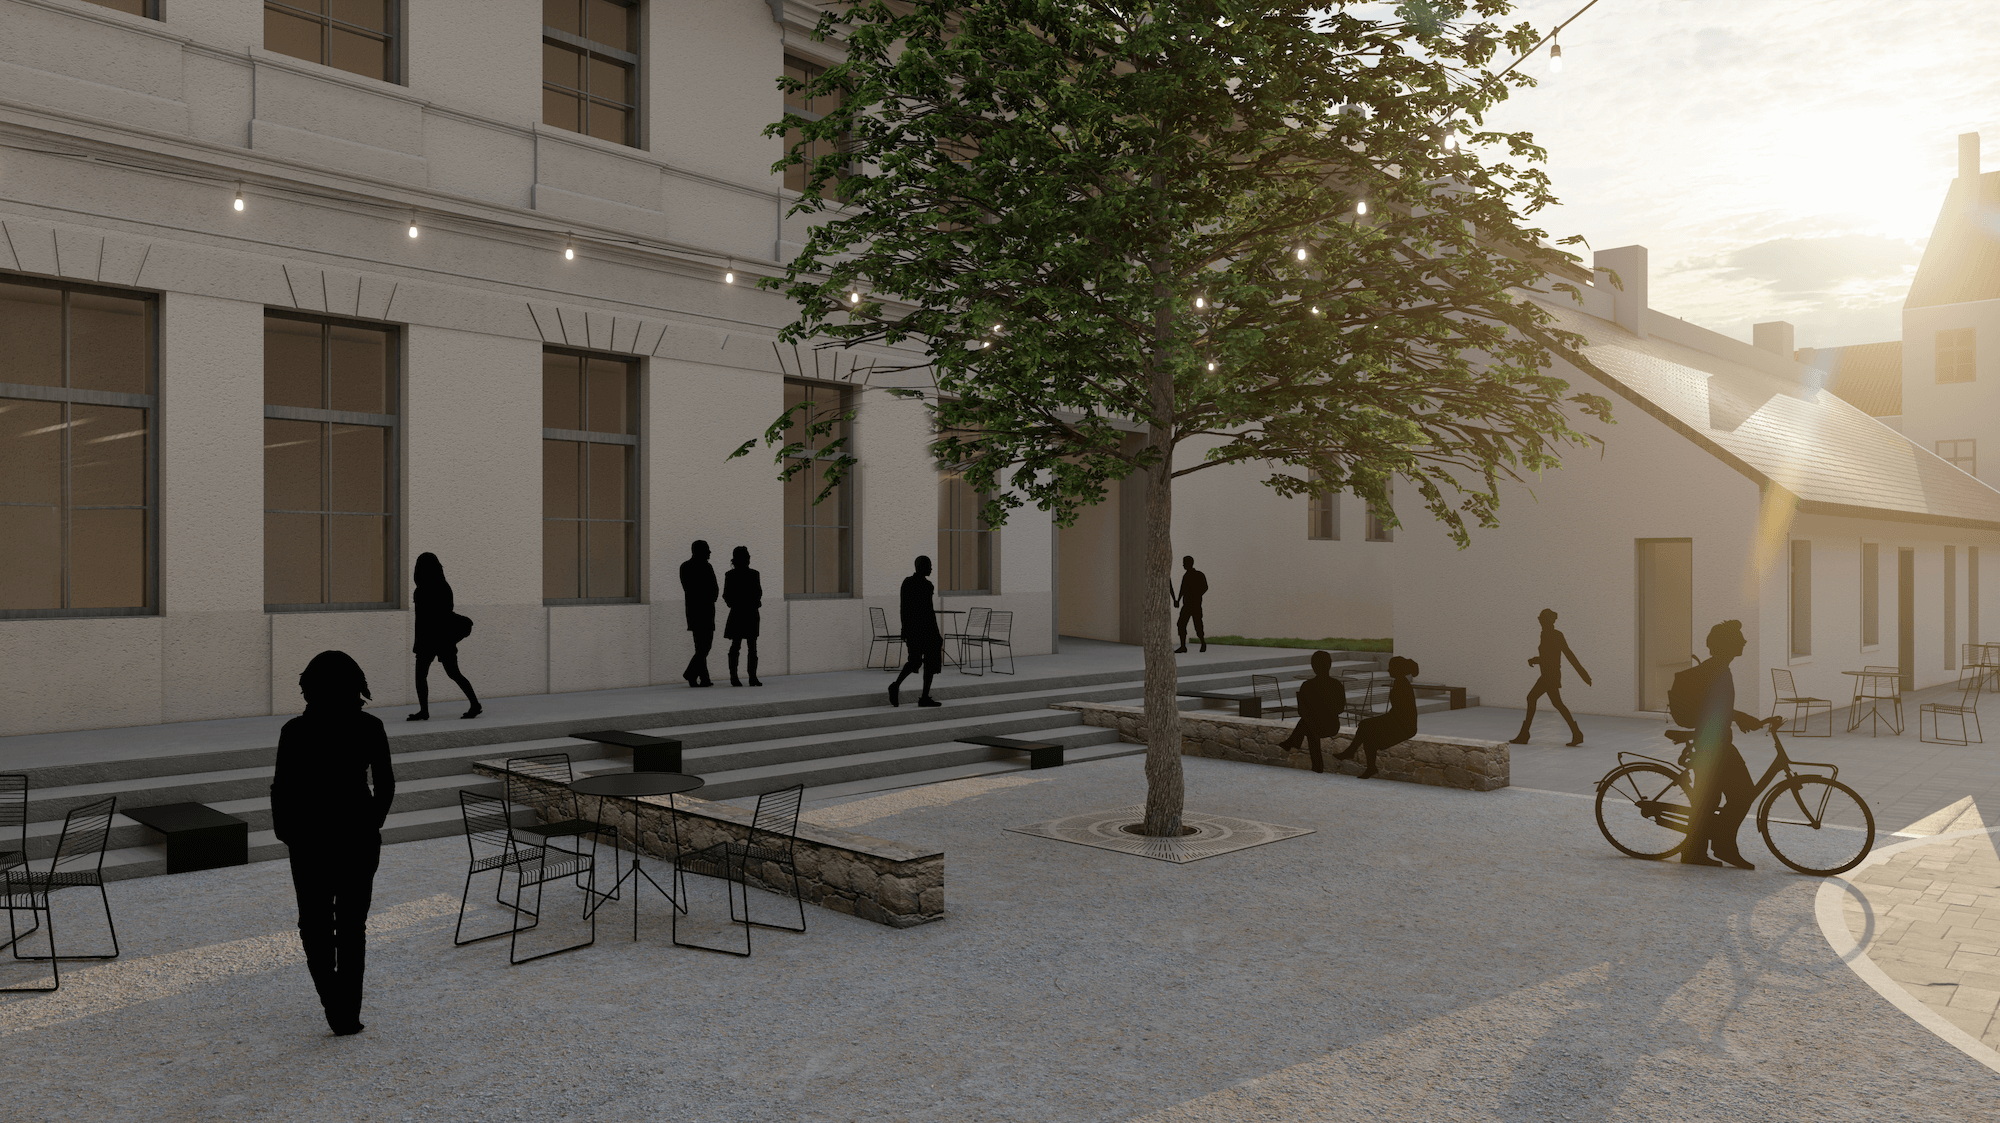 Vizualizácia radničného námestia v Trnave